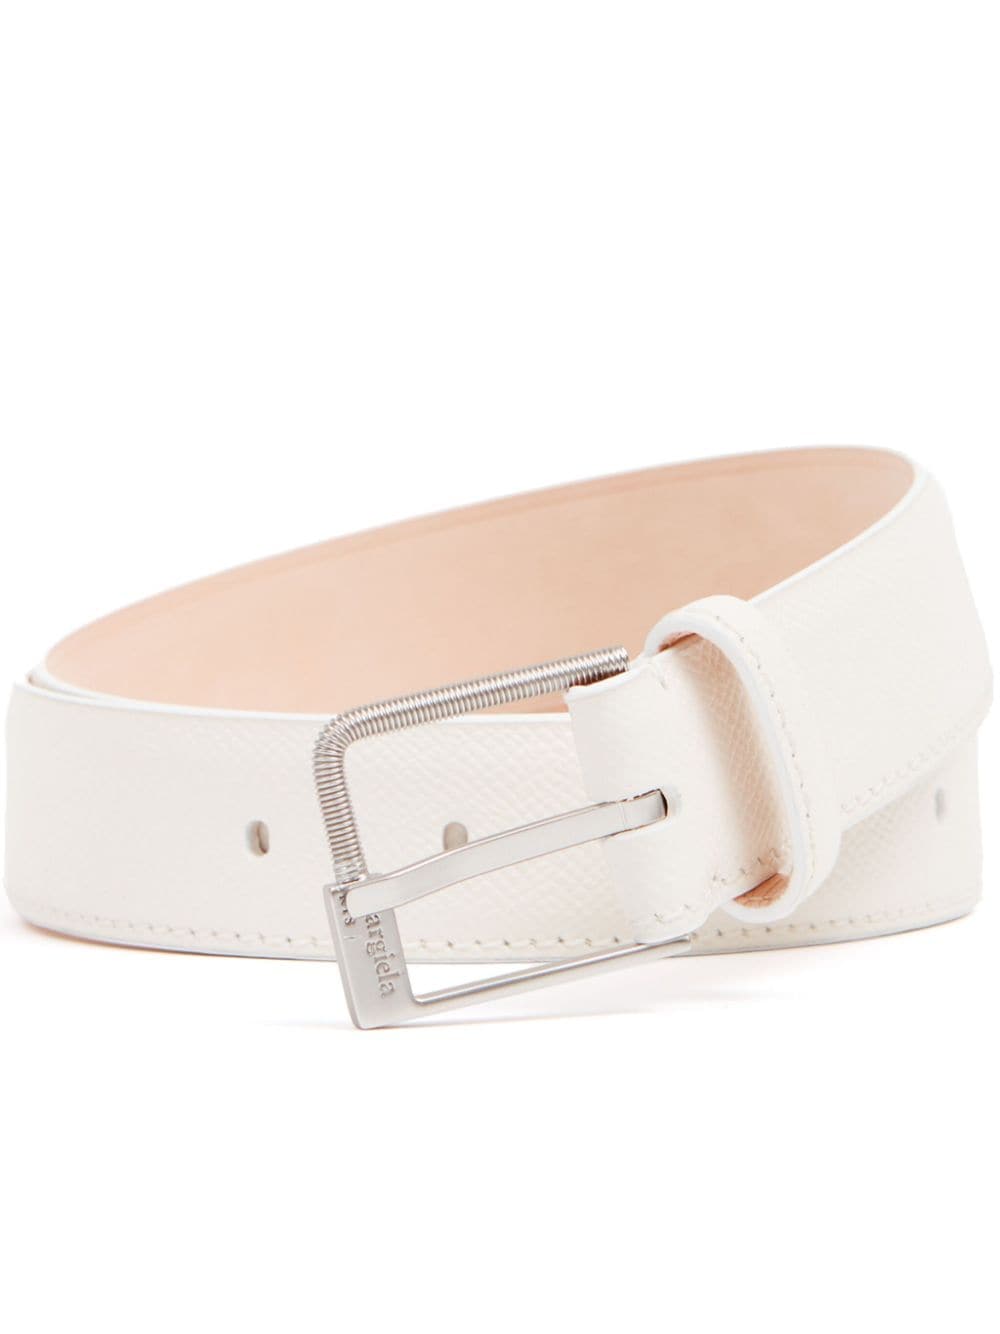 Maison Margiela buckled leather belt - White von Maison Margiela